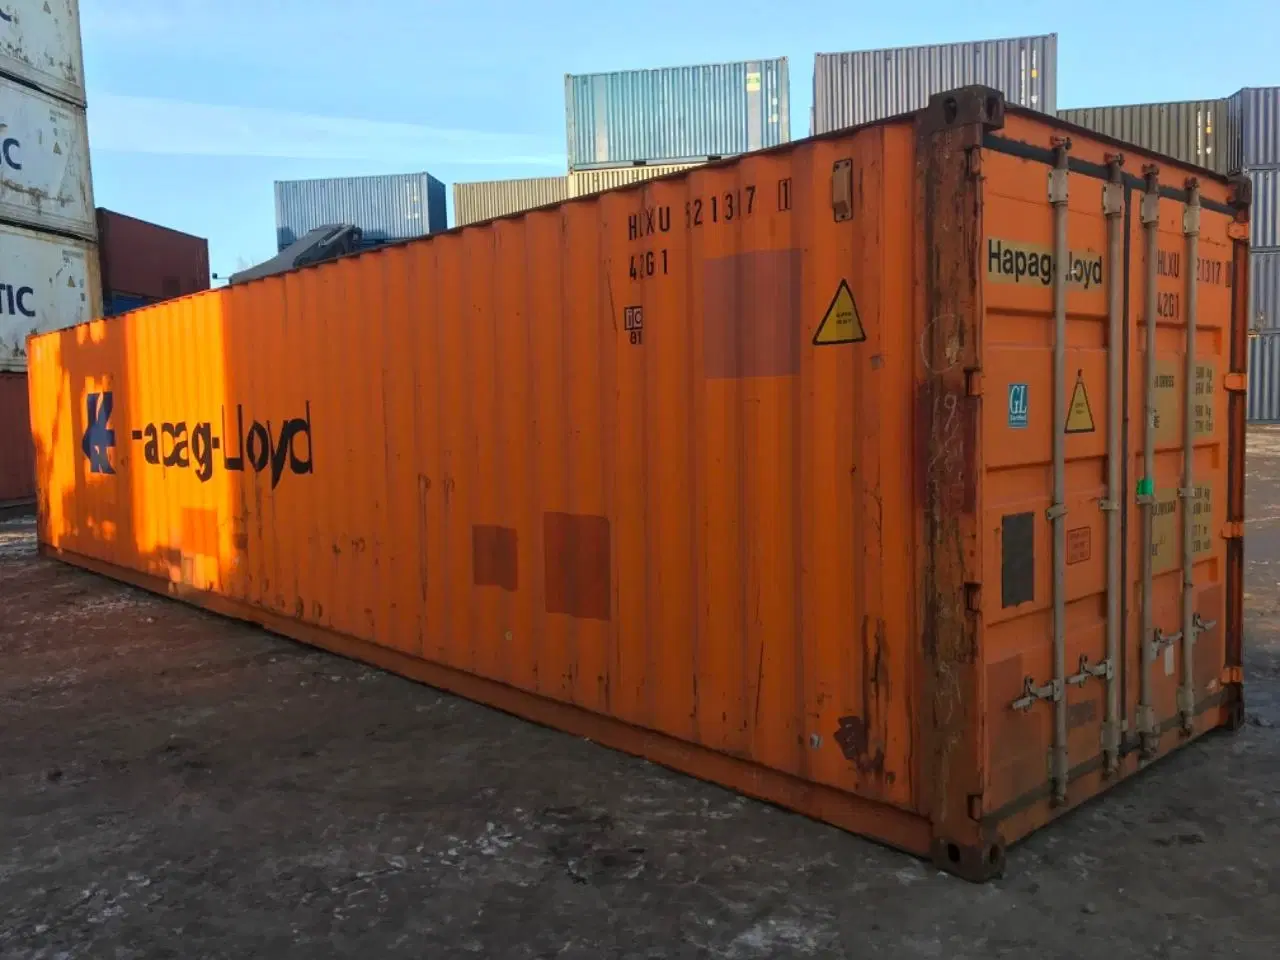 Billede 6 - 40 fods container ( billig ) ID: HLXU 521317-1